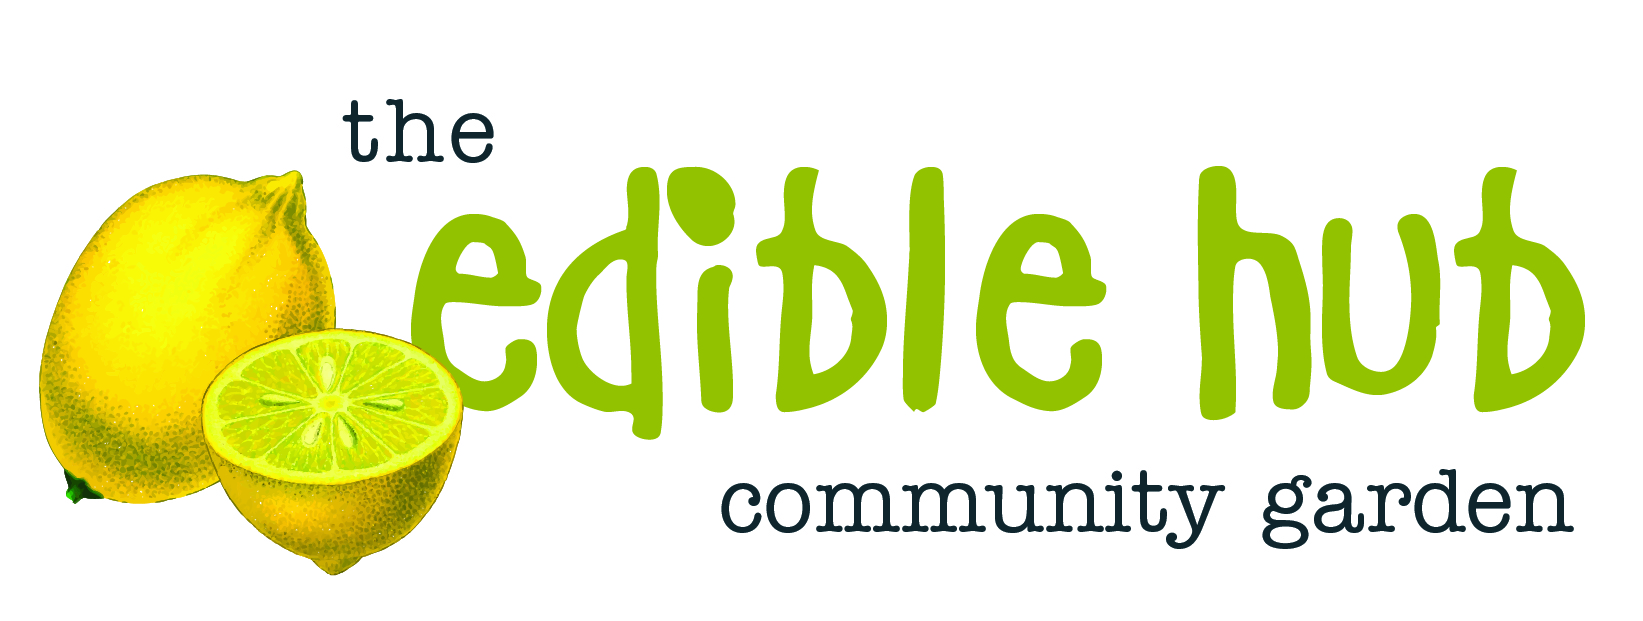 Edible Hub